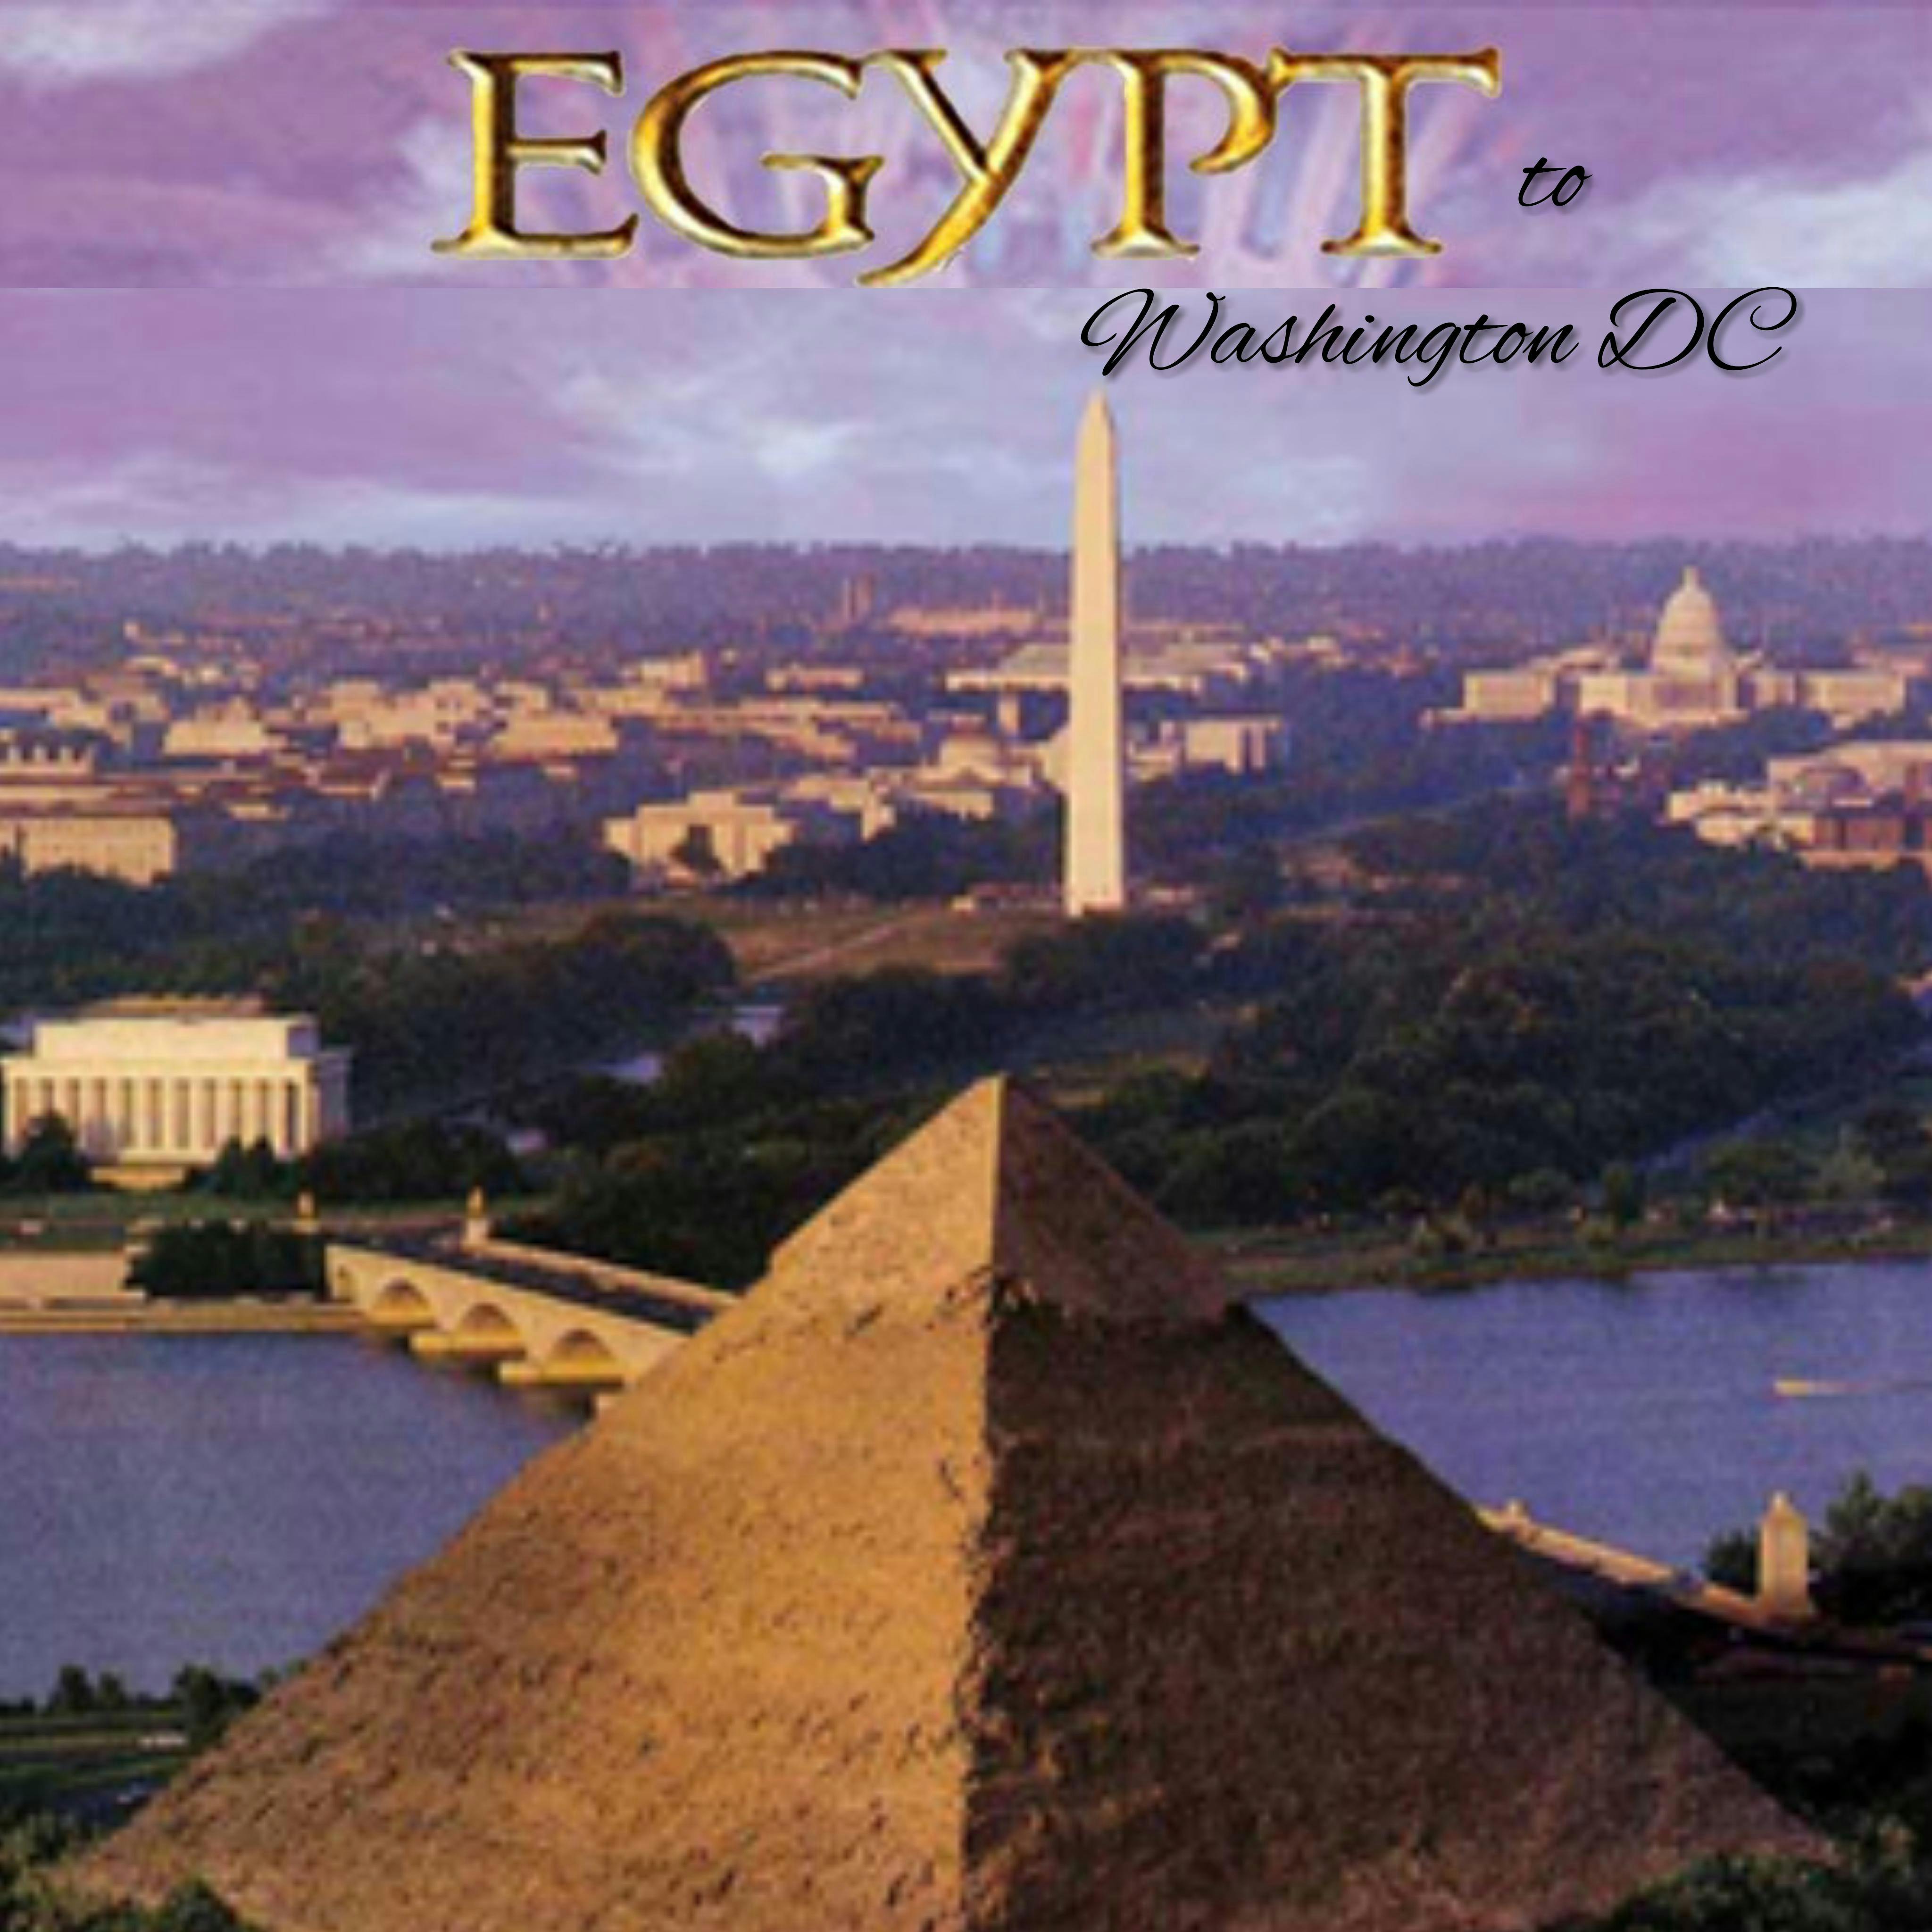 Egypt to Washington DC Tour - Rochester NY Bus Trip to Washington DC